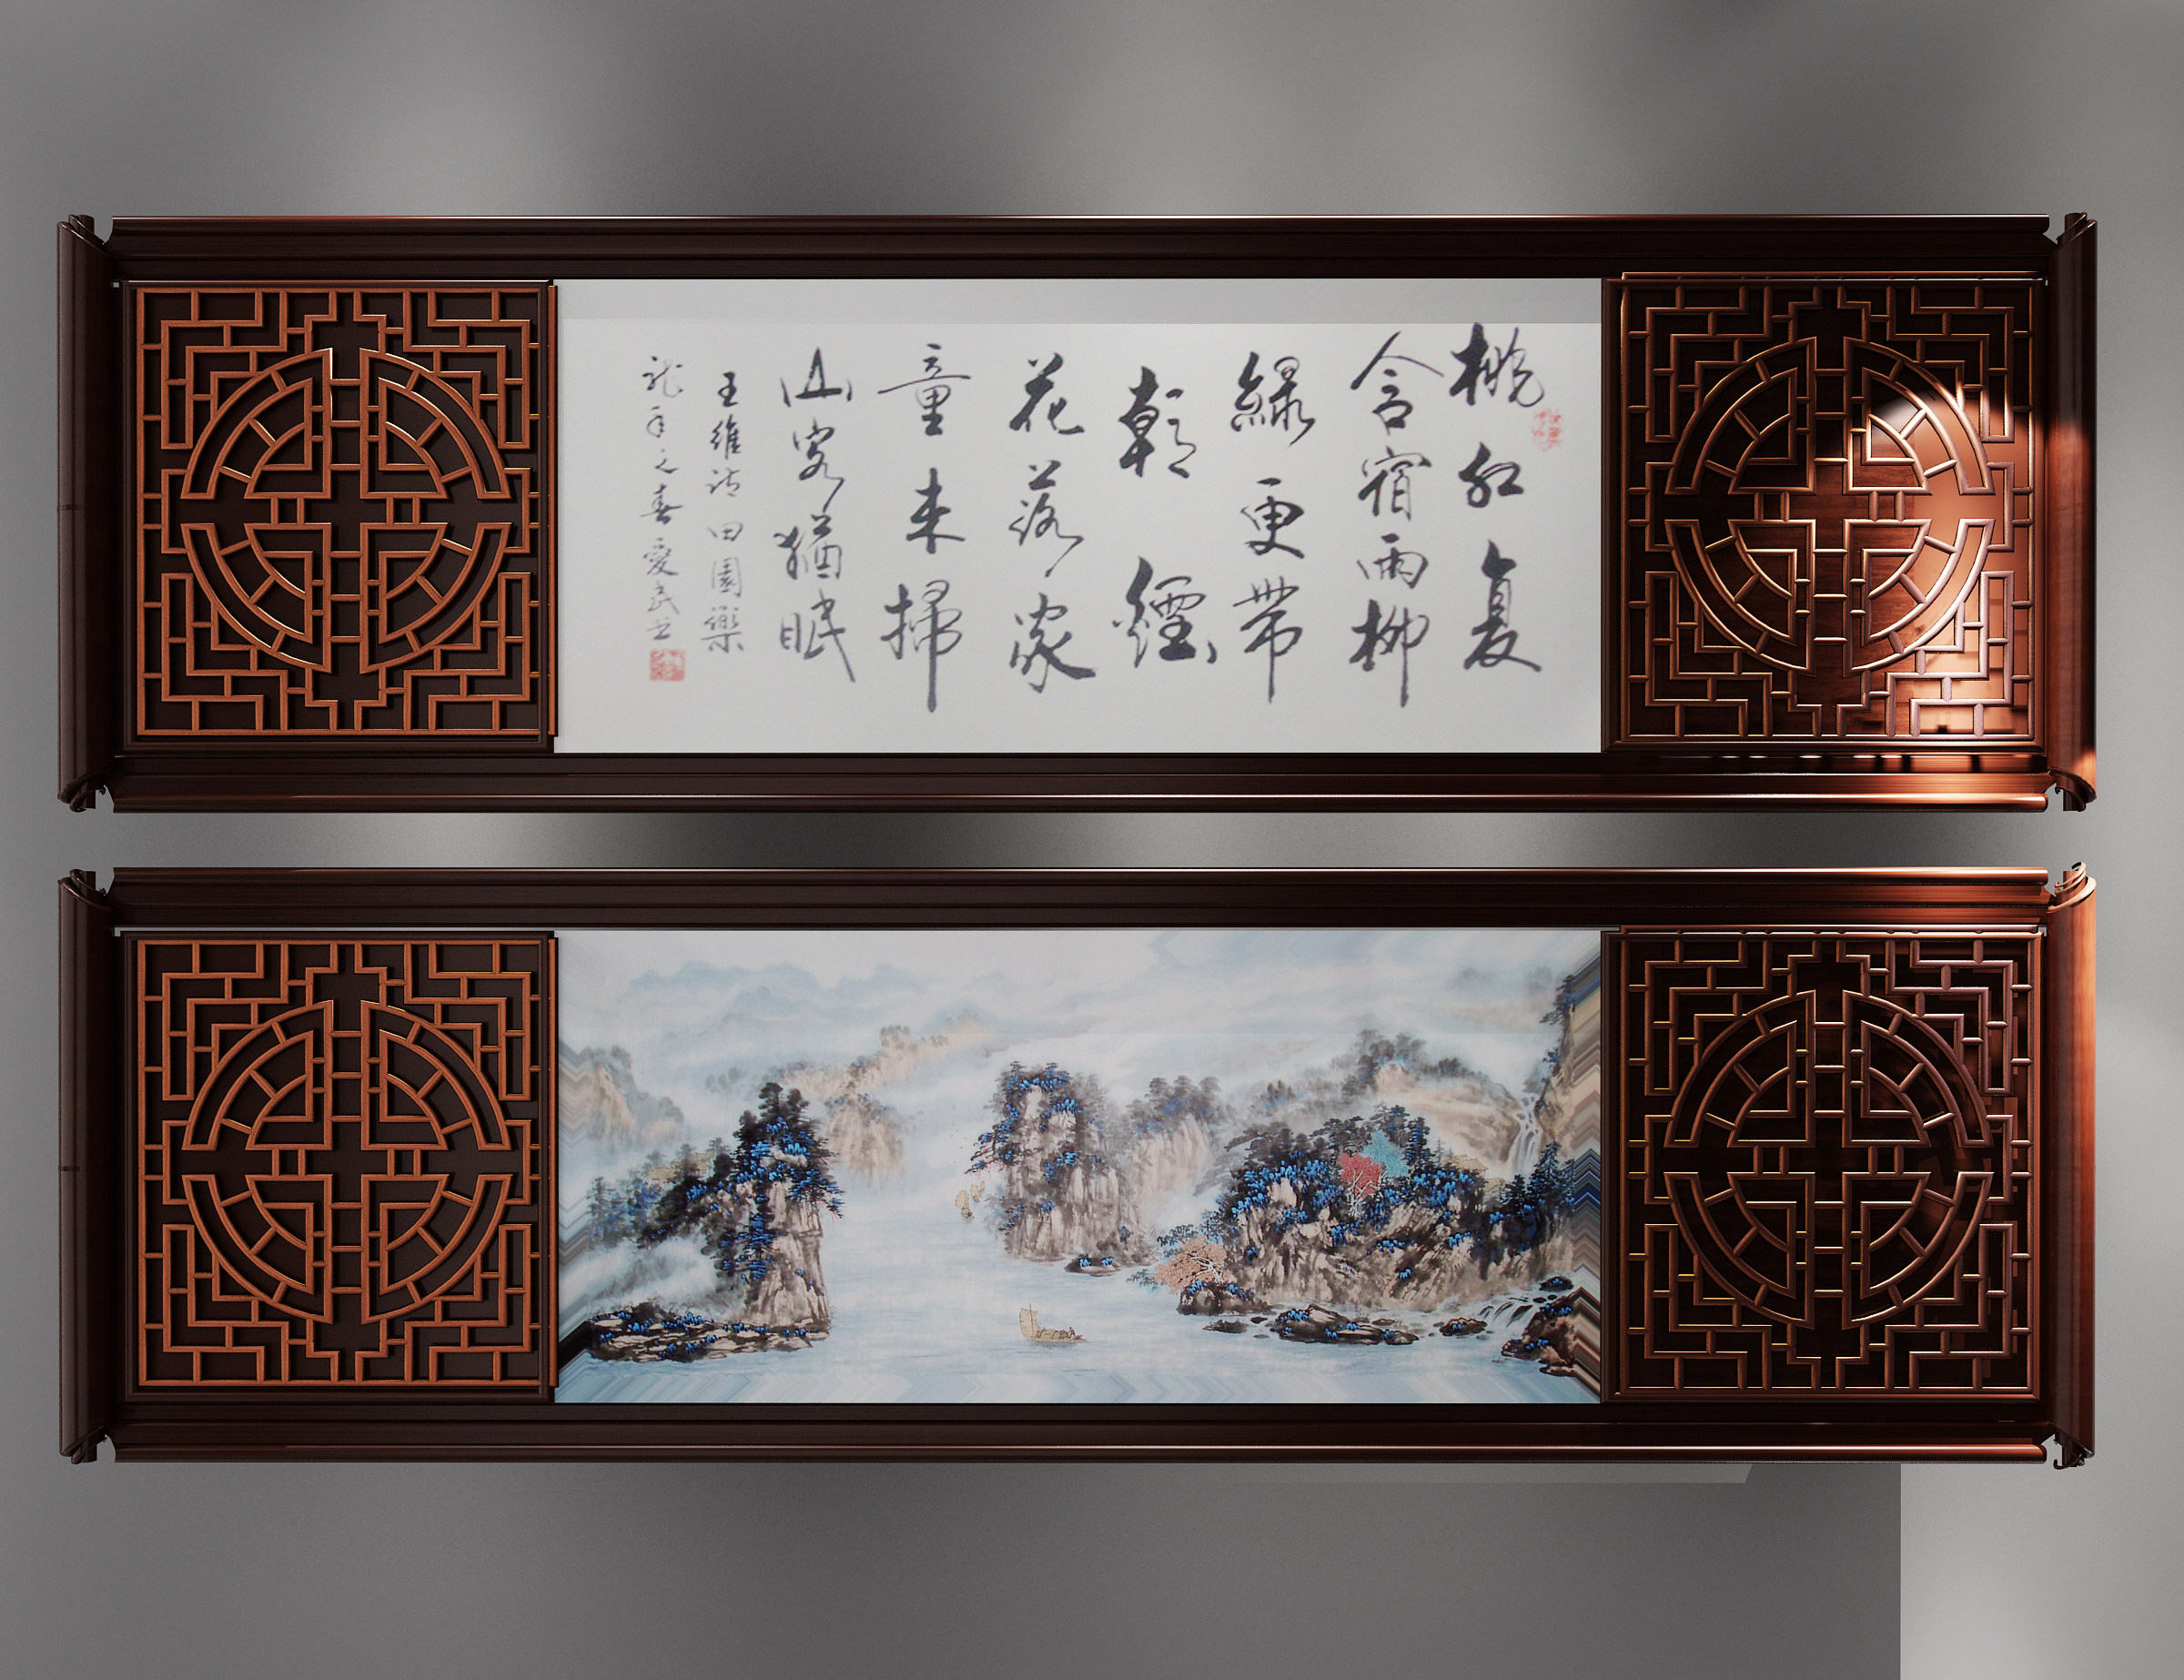 中式书法雕花木雕装饰画,挂画,墙饰 (1)3d模型下载